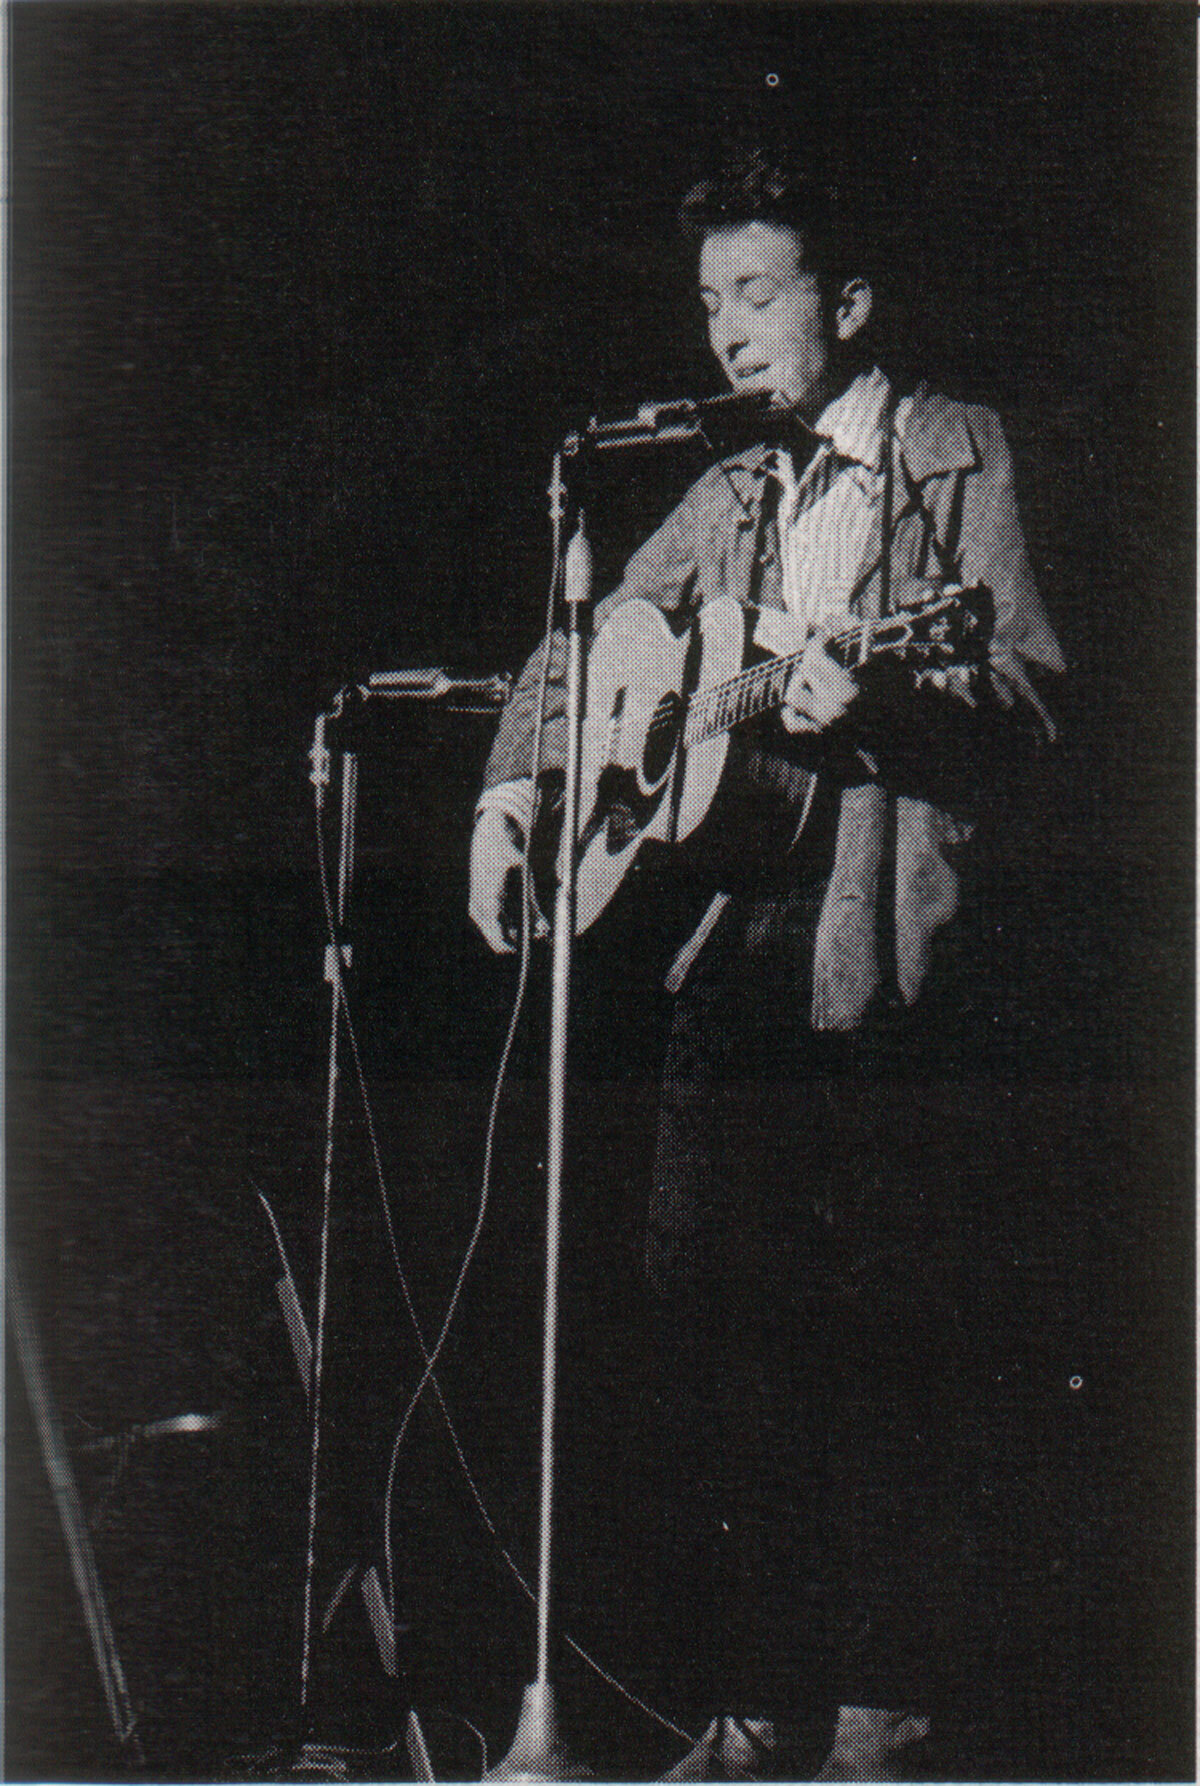 Bob Dylan, pre-electric